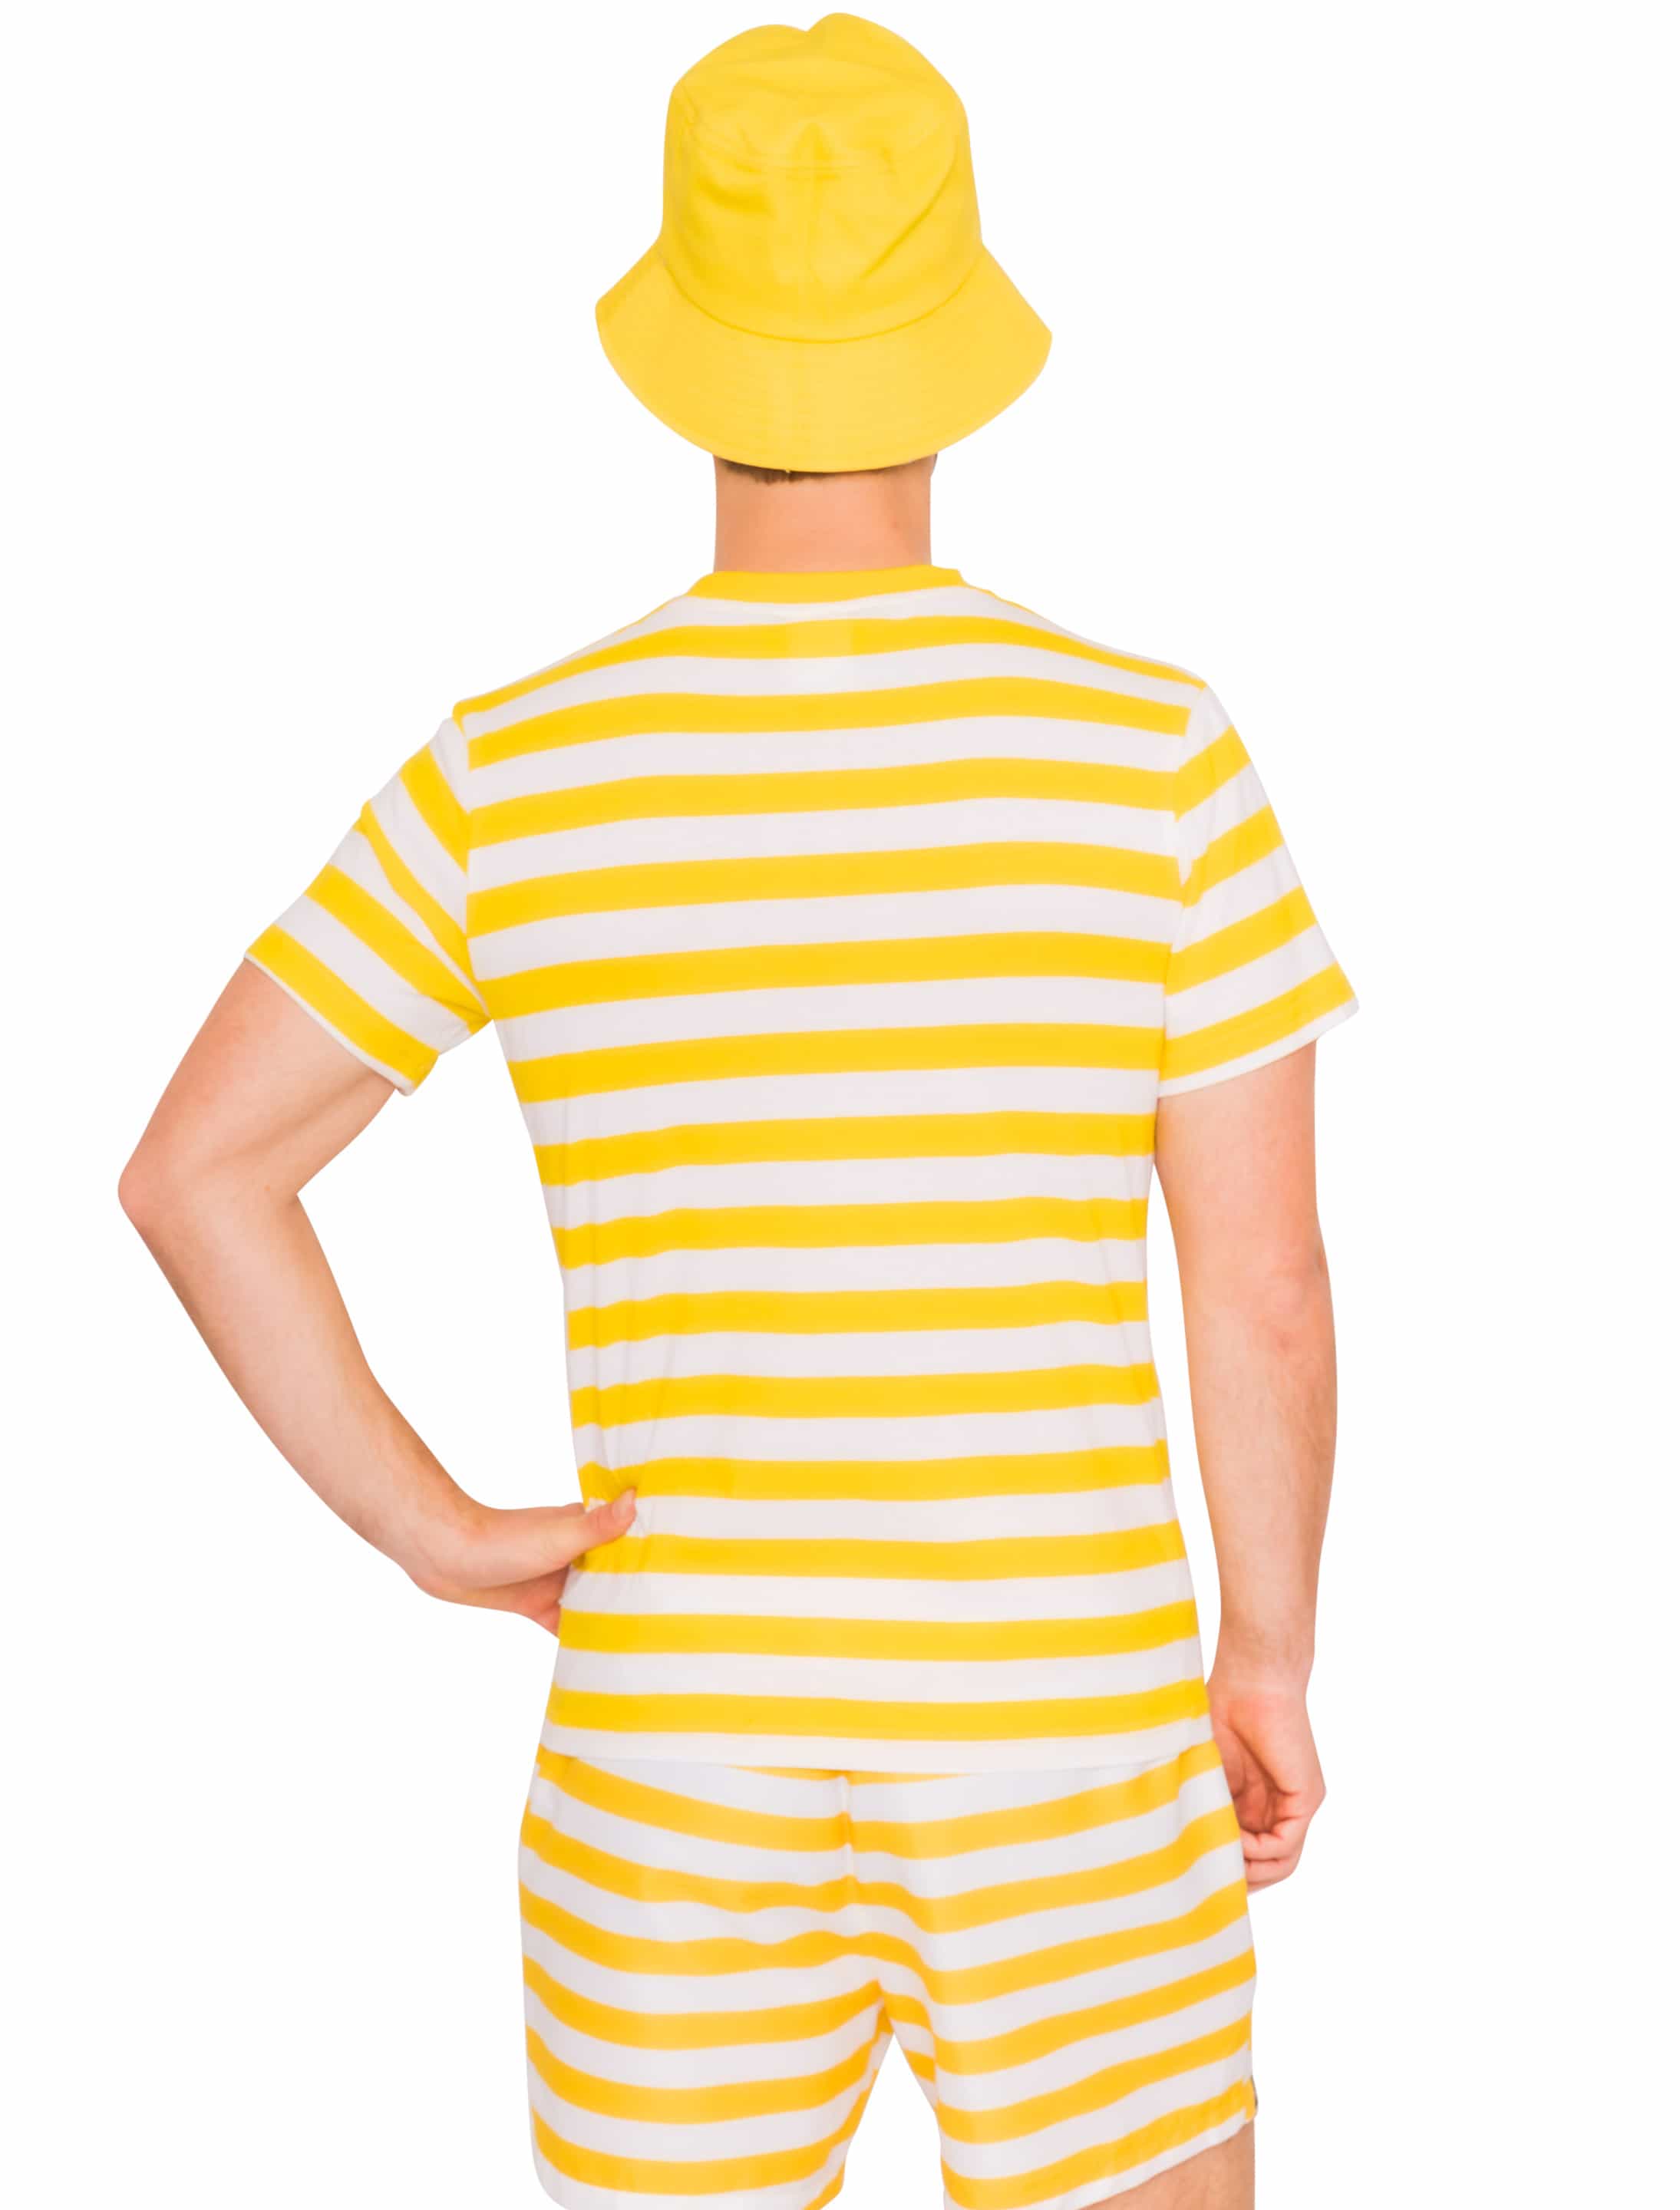 JIS T-Shirt Jeck im Sunnesching Herren gelb XL